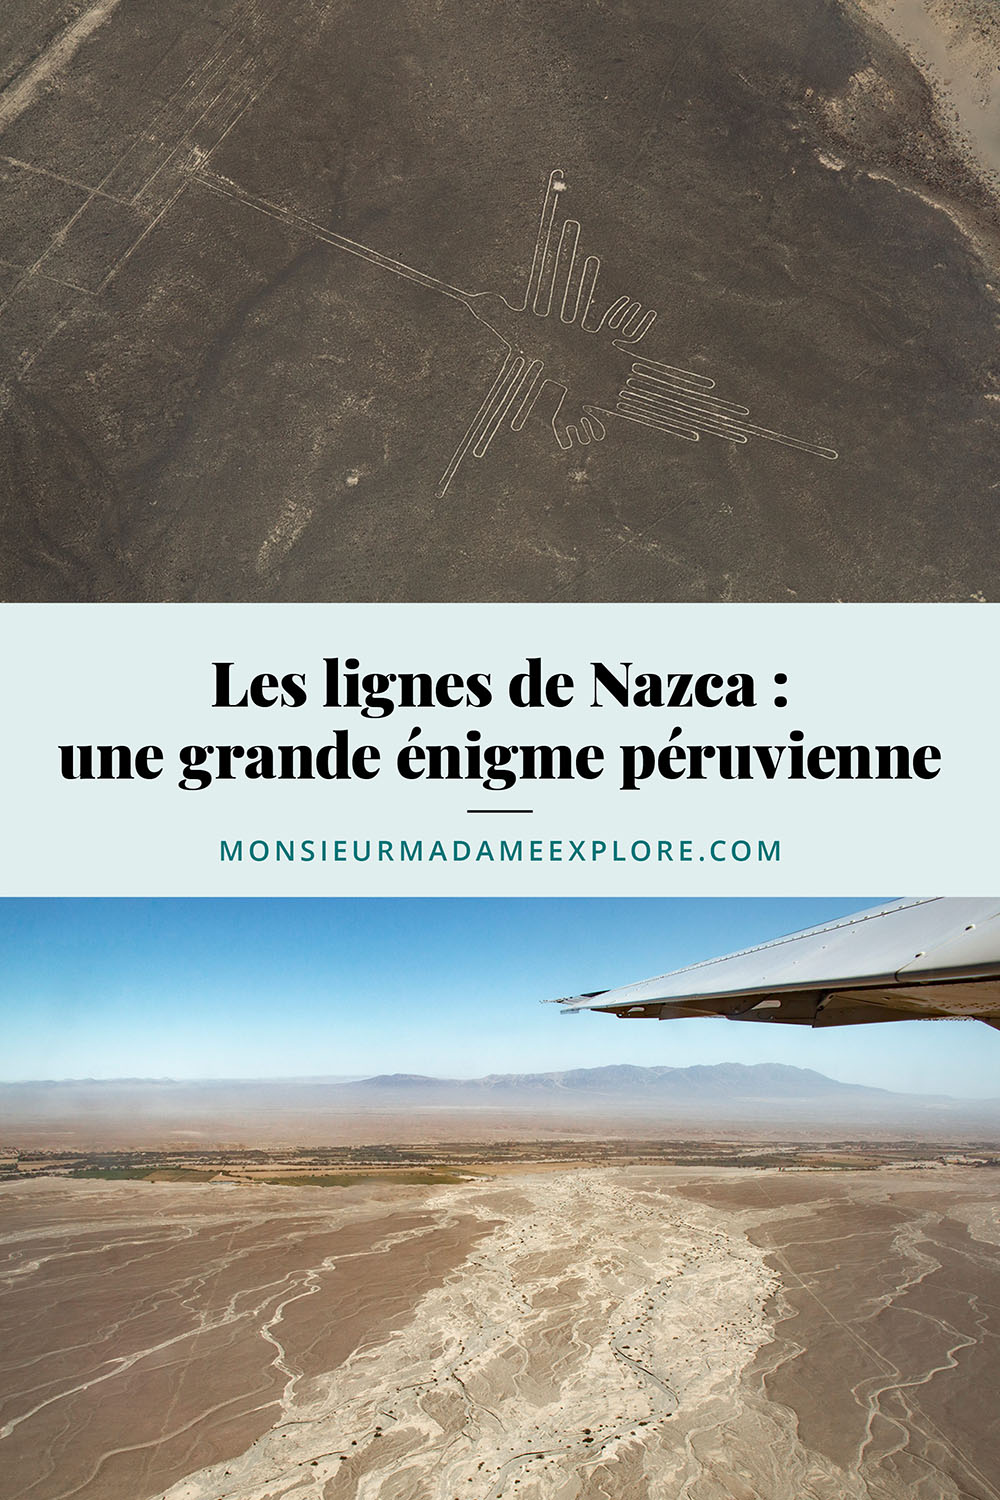 Les lignes de Nazca : une grande énigme péruvienne, Monsieur+Madame Explore, Blogue de voyage, Pérou / The Nazca Lines, Peru